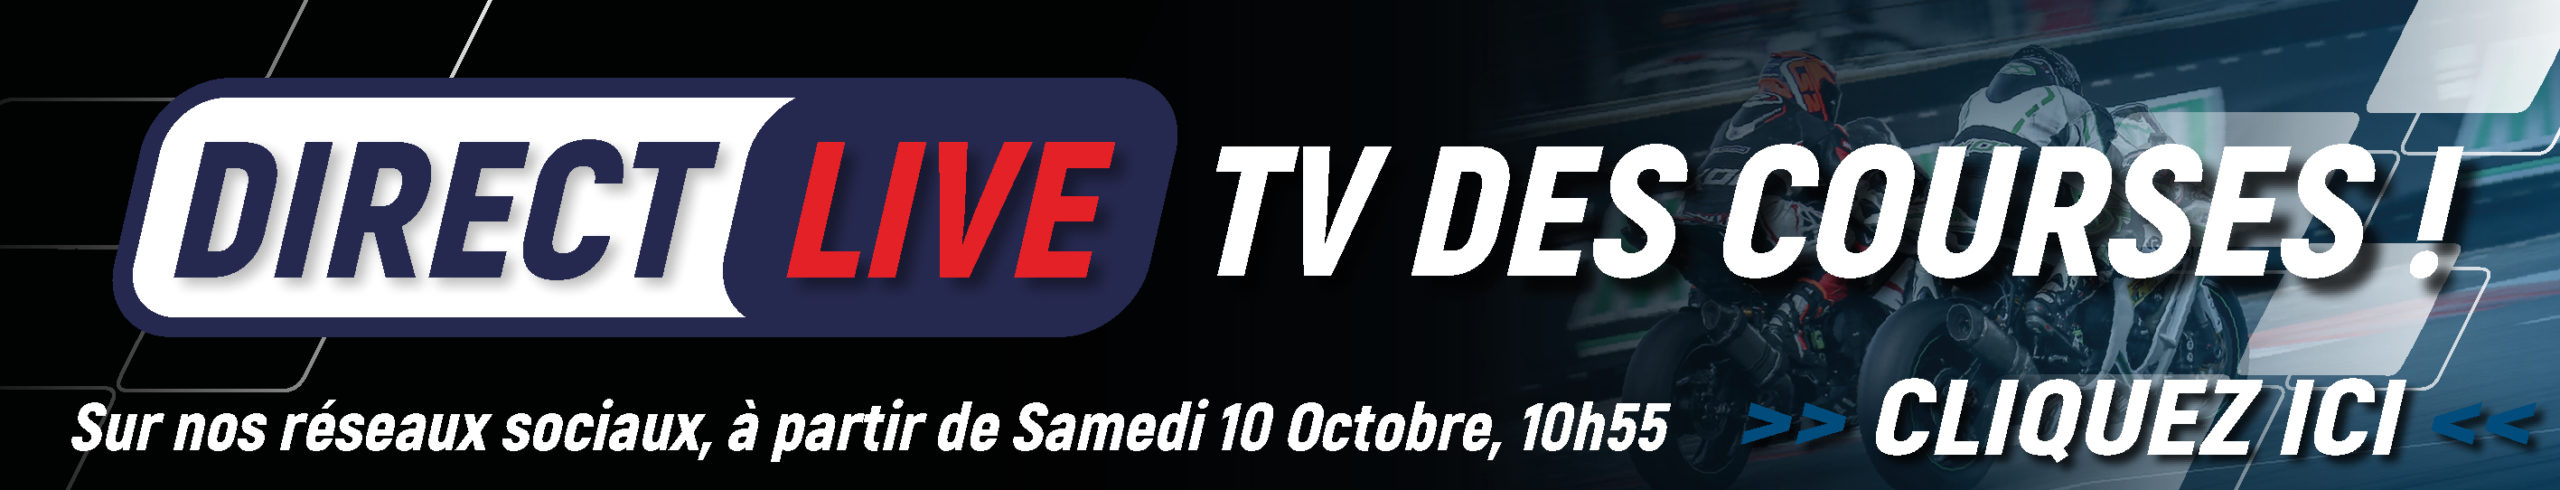 Bannière Live TV